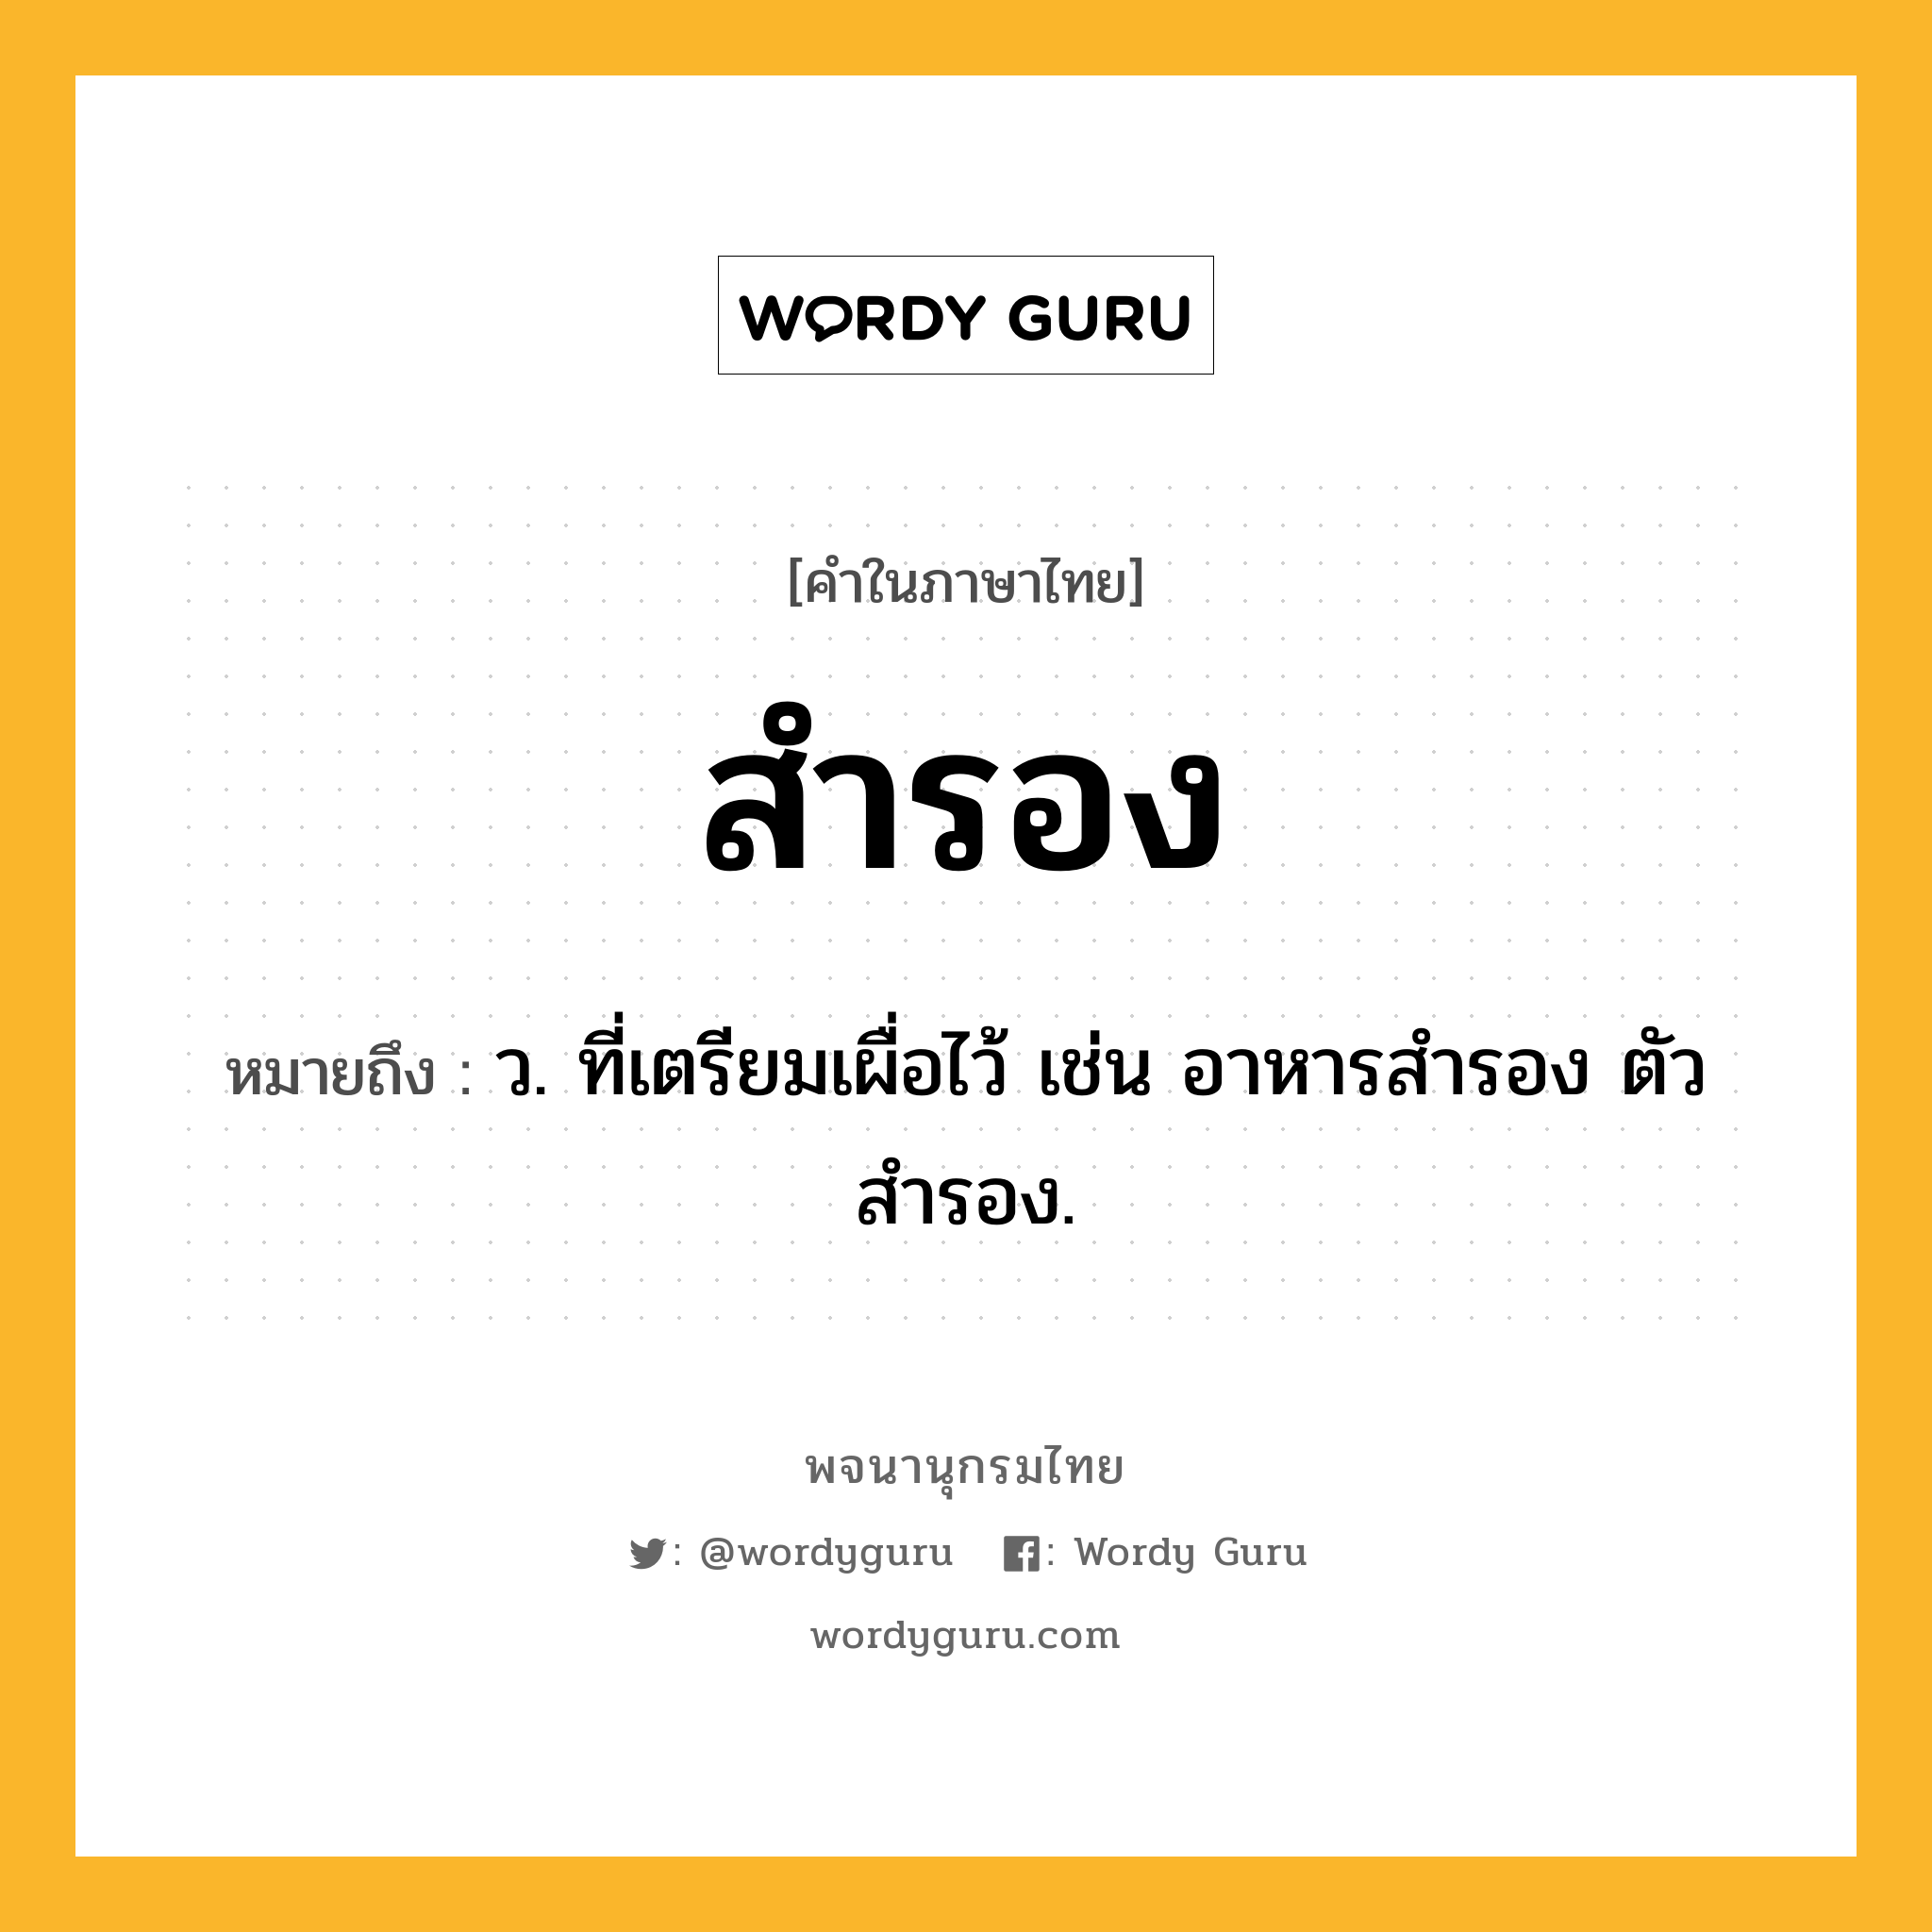 สำรอง หมายถึงอะไร?, คำในภาษาไทย สำรอง หมายถึง ว. ที่เตรียมเผื่อไว้ เช่น อาหารสำรอง ตัวสำรอง.